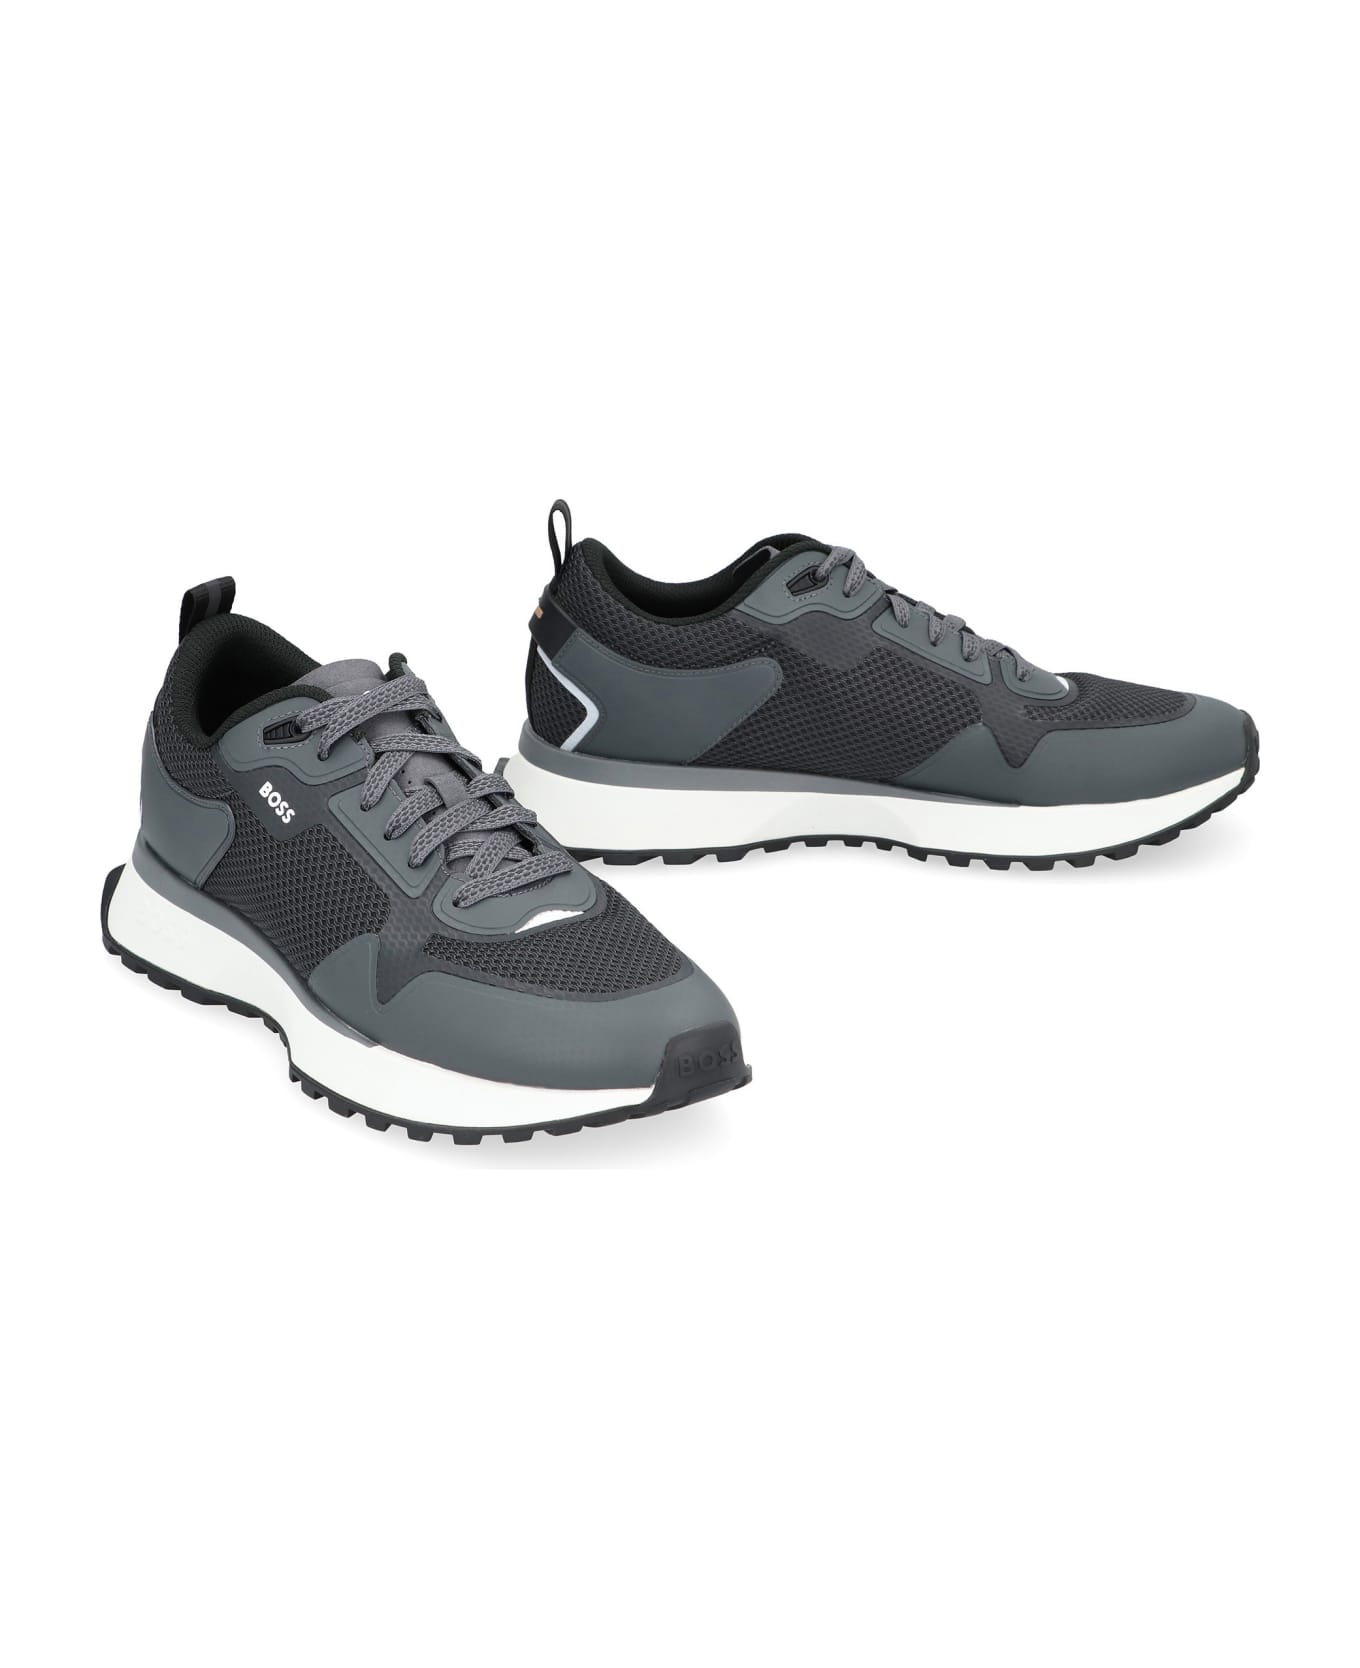 Hugo Boss Jonah Fabric Low-top Sneakers - grey